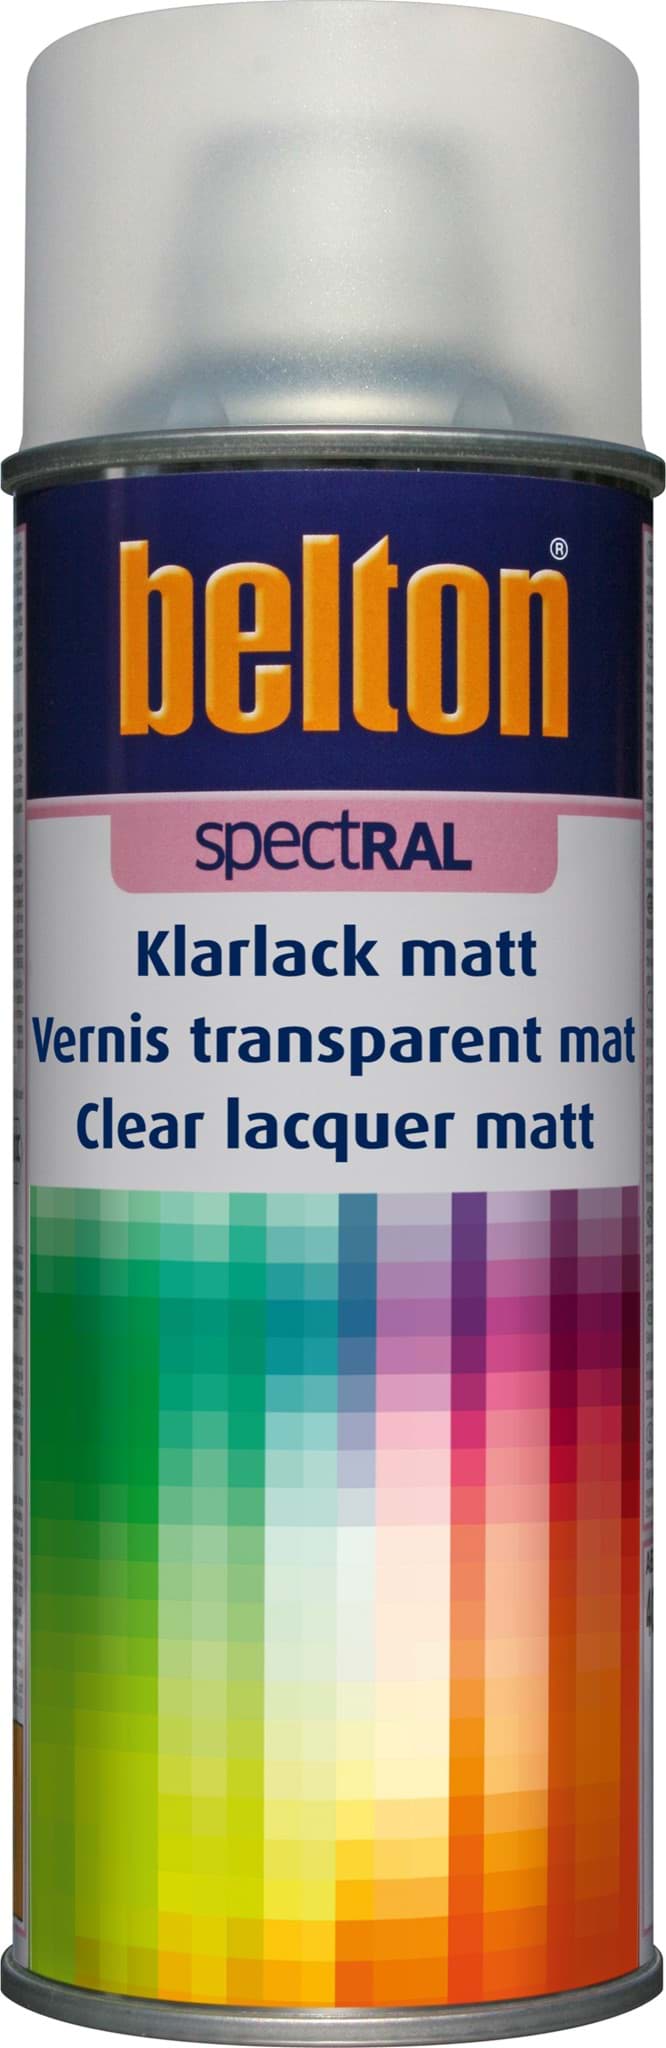 Belton RAL Spectral Klarlack matt 400ml Lackspray resmi